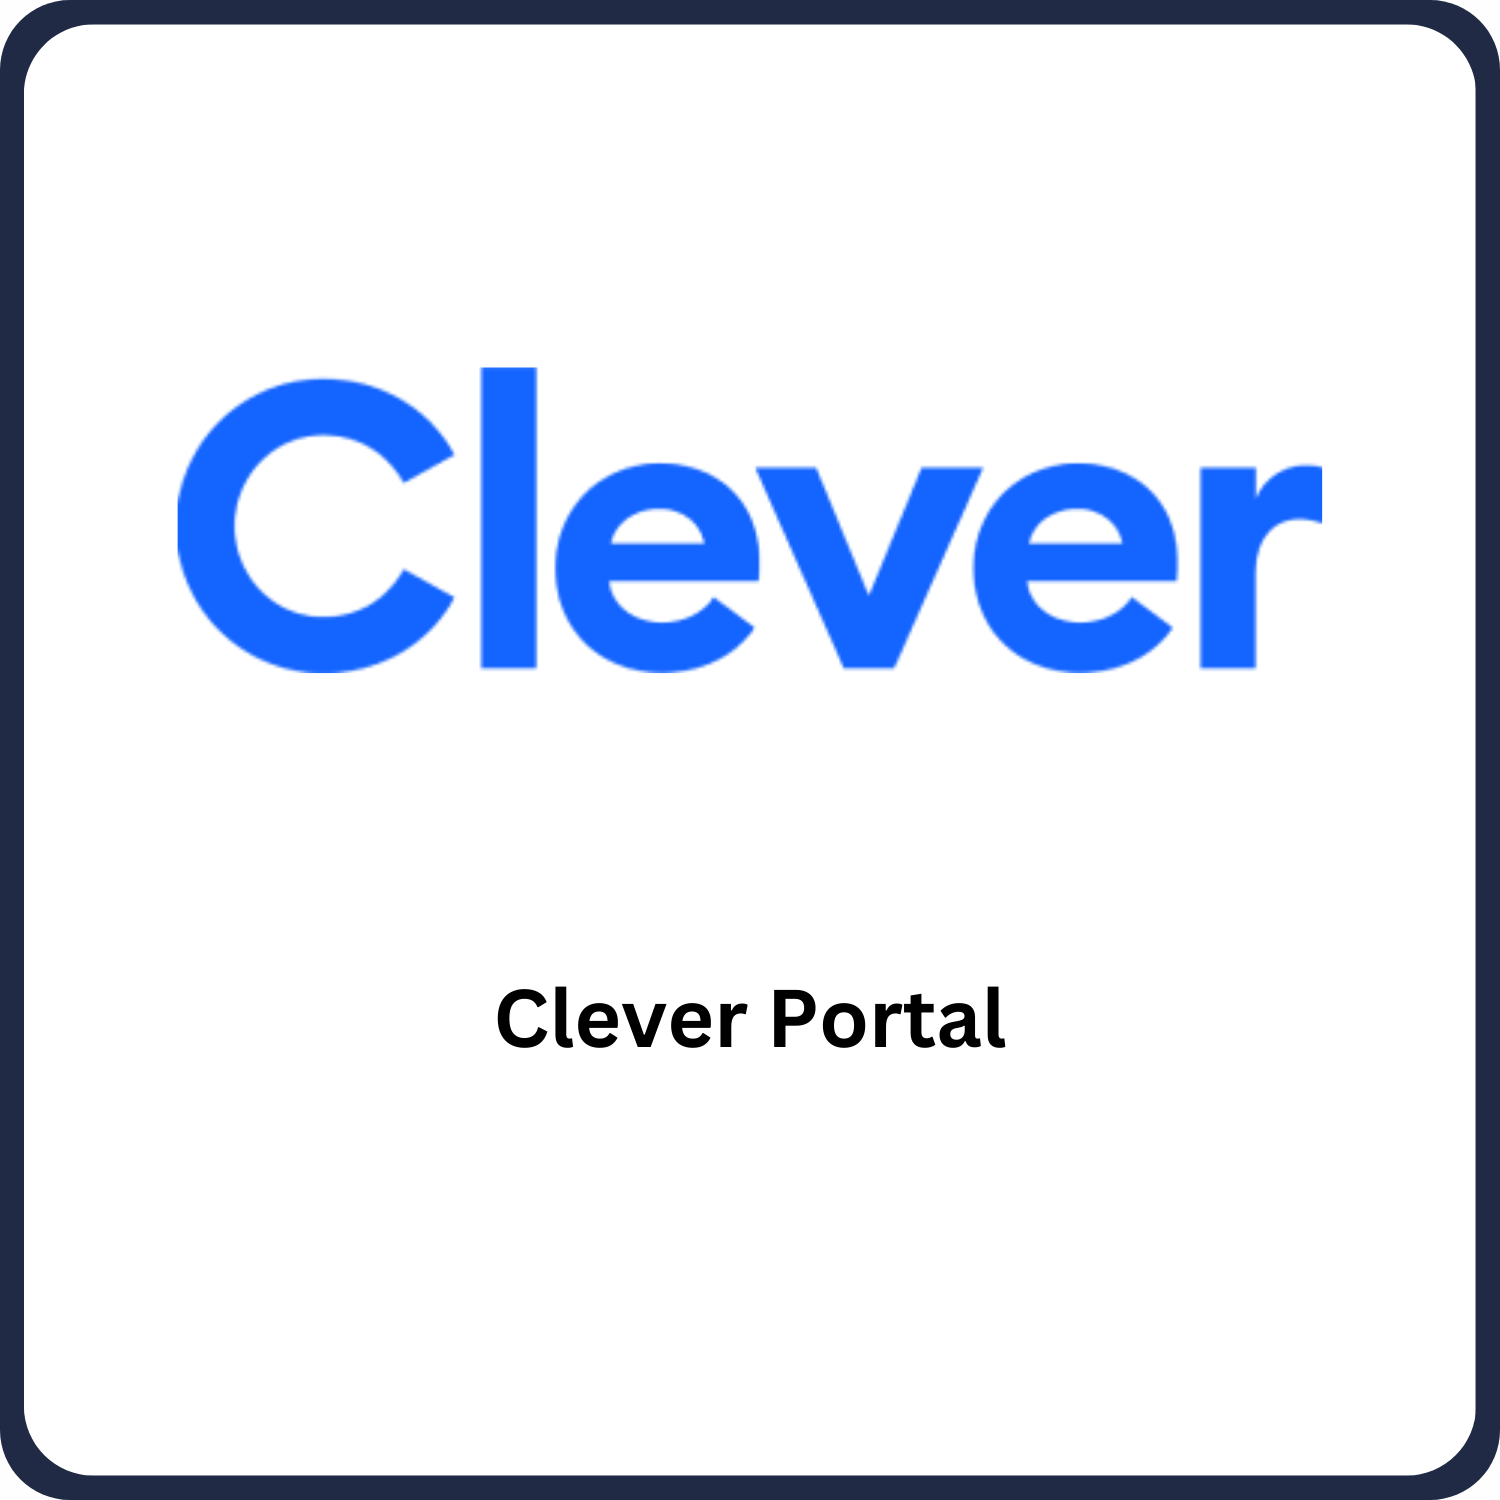 Clever Portal